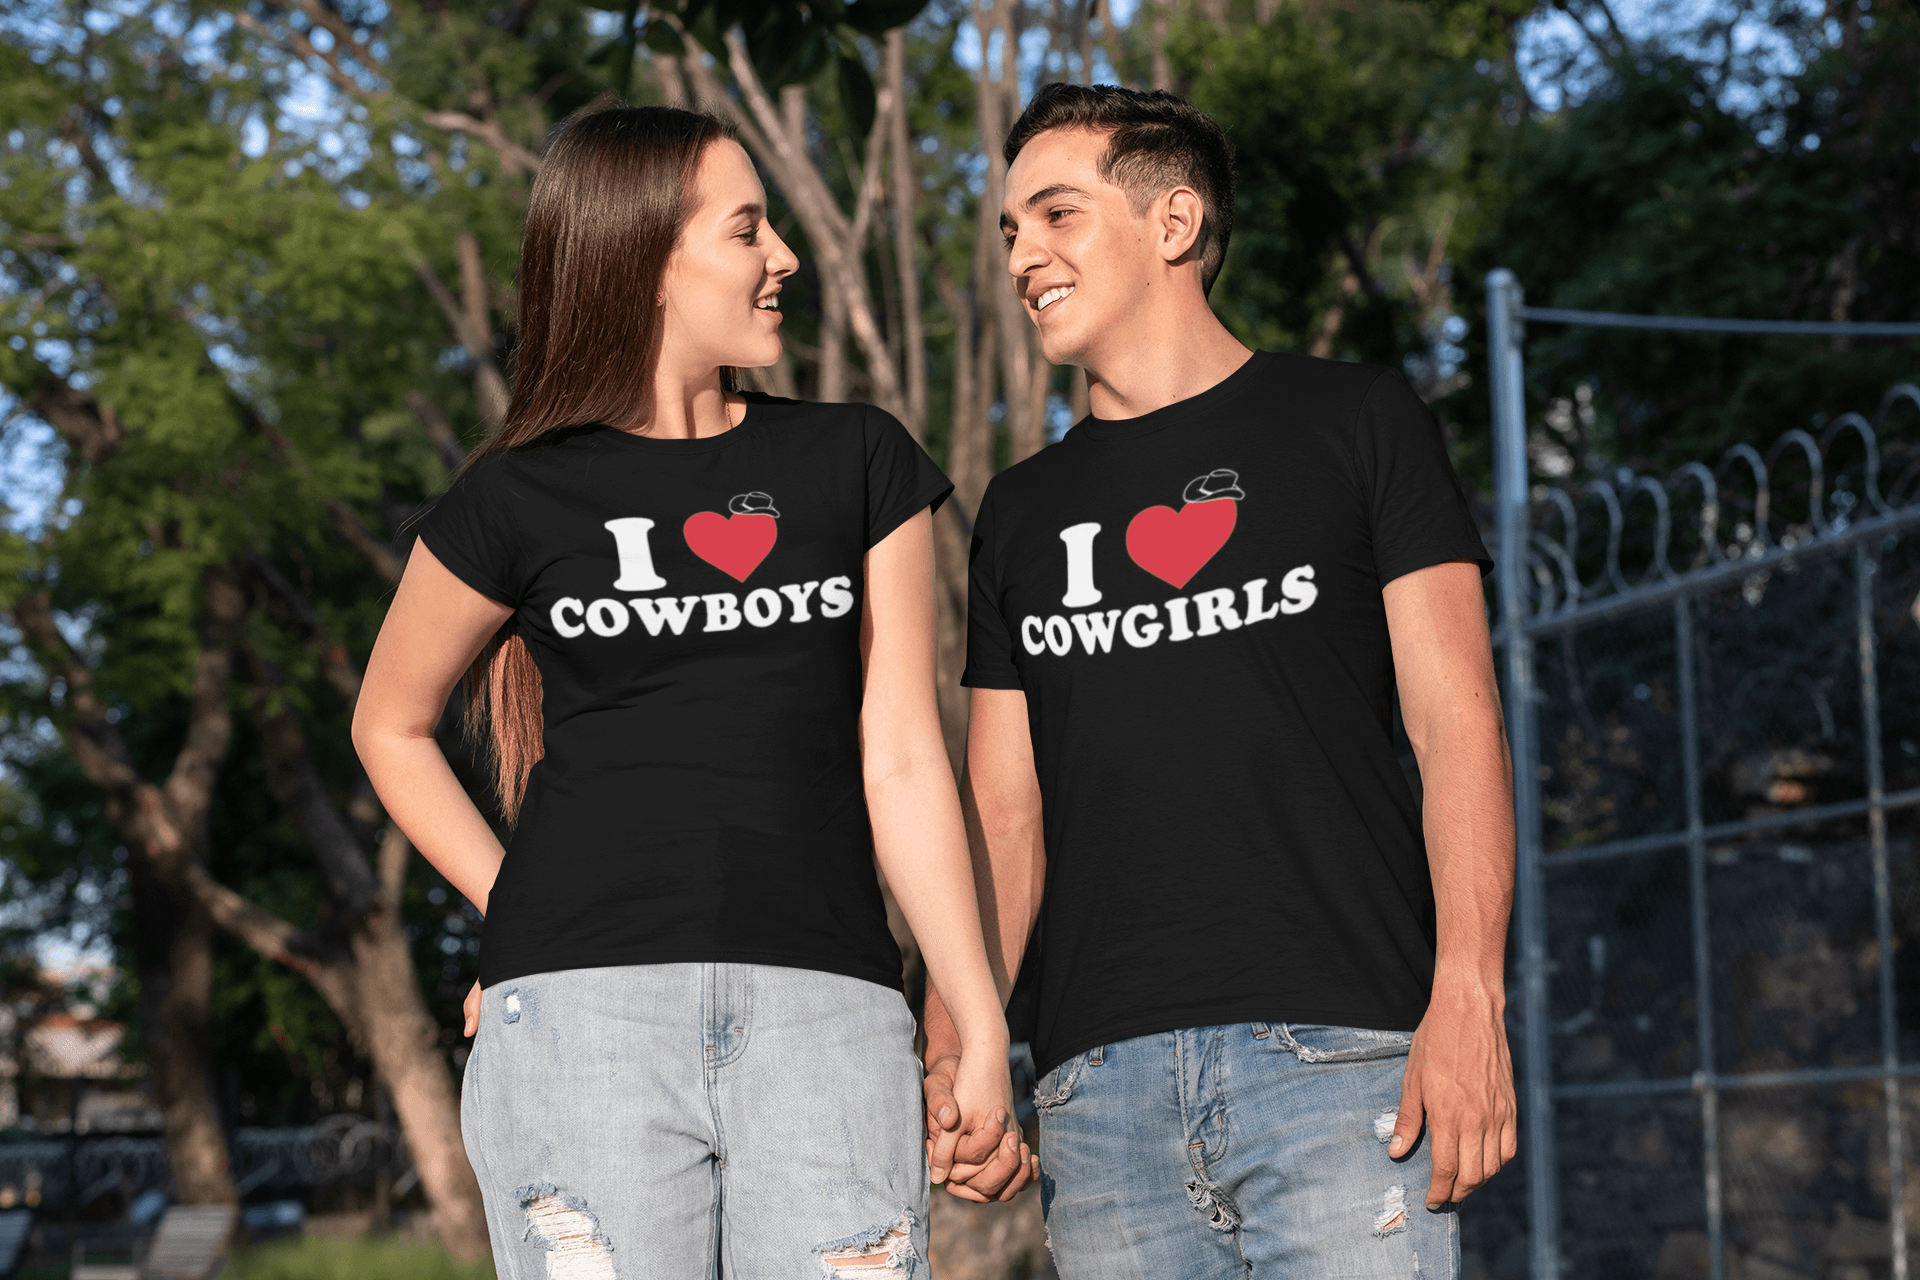 I Love Cowgirls Top Koala Sofstyle 100% Cotton Unisex Tee - TopKoalaTee